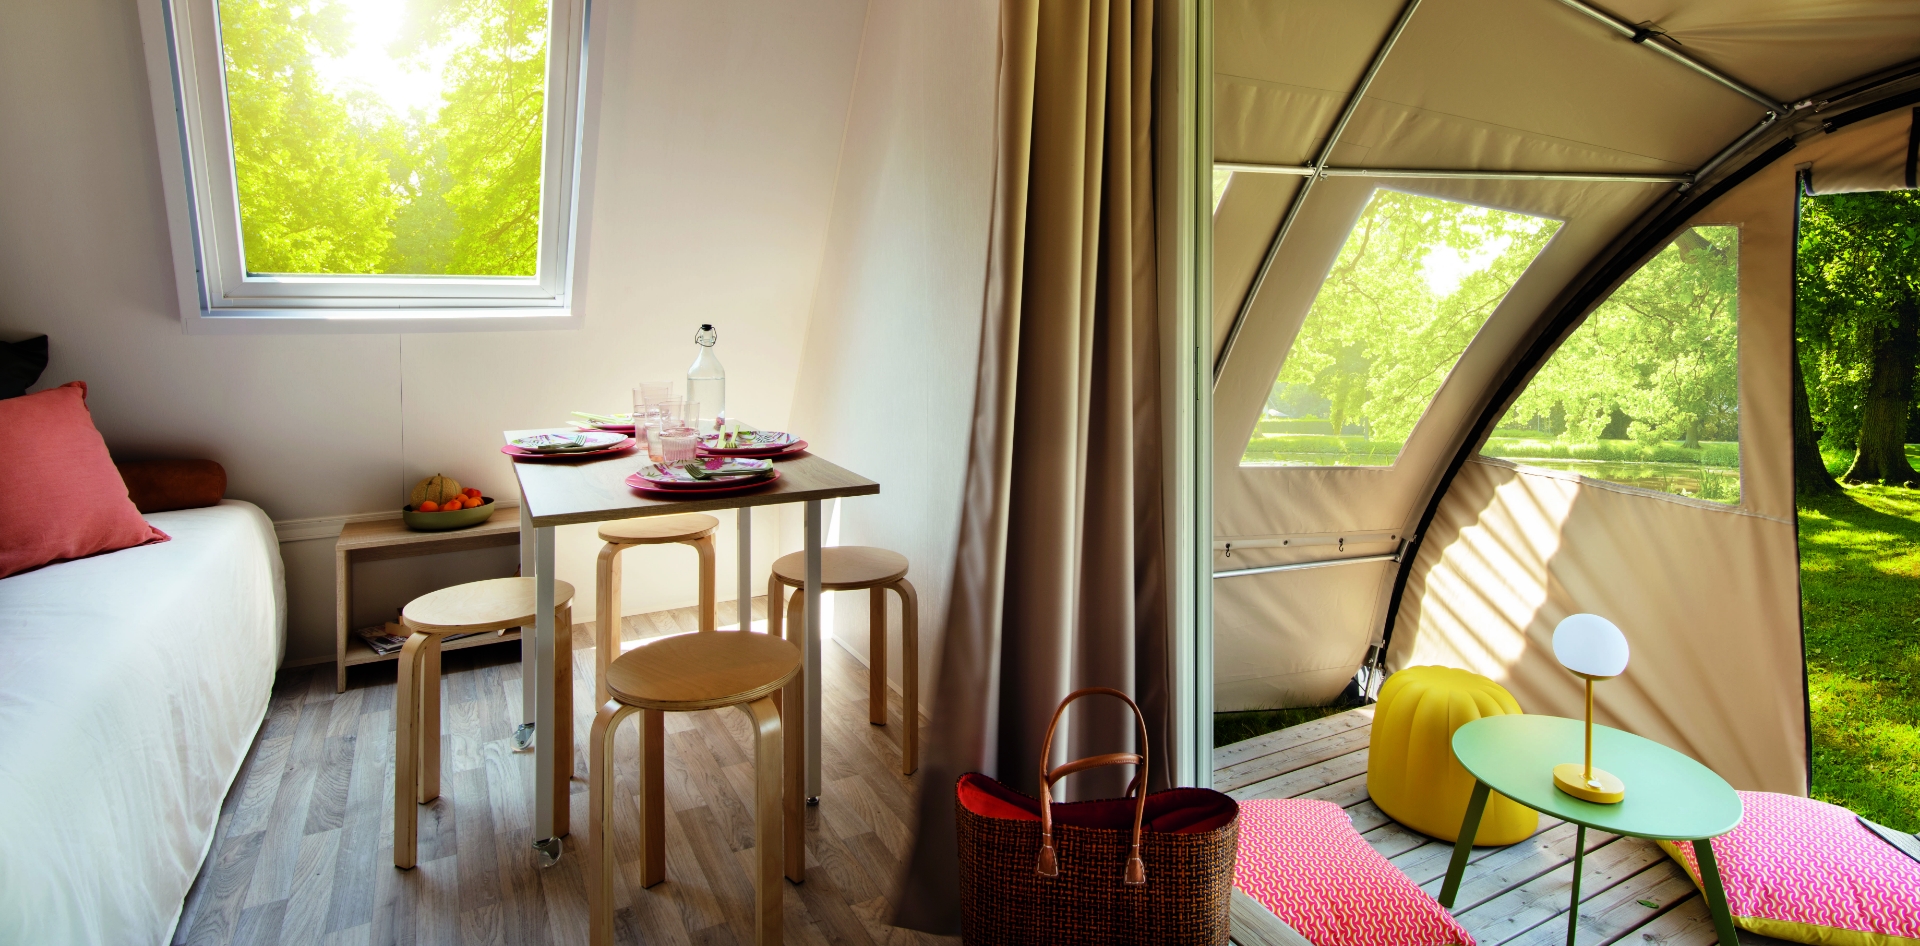 Schlafbereich und Wohnbereich von Coco Chrono, der originellen Mietunterkunft auf dem Campingplatz Les Bords de Loue im Jura